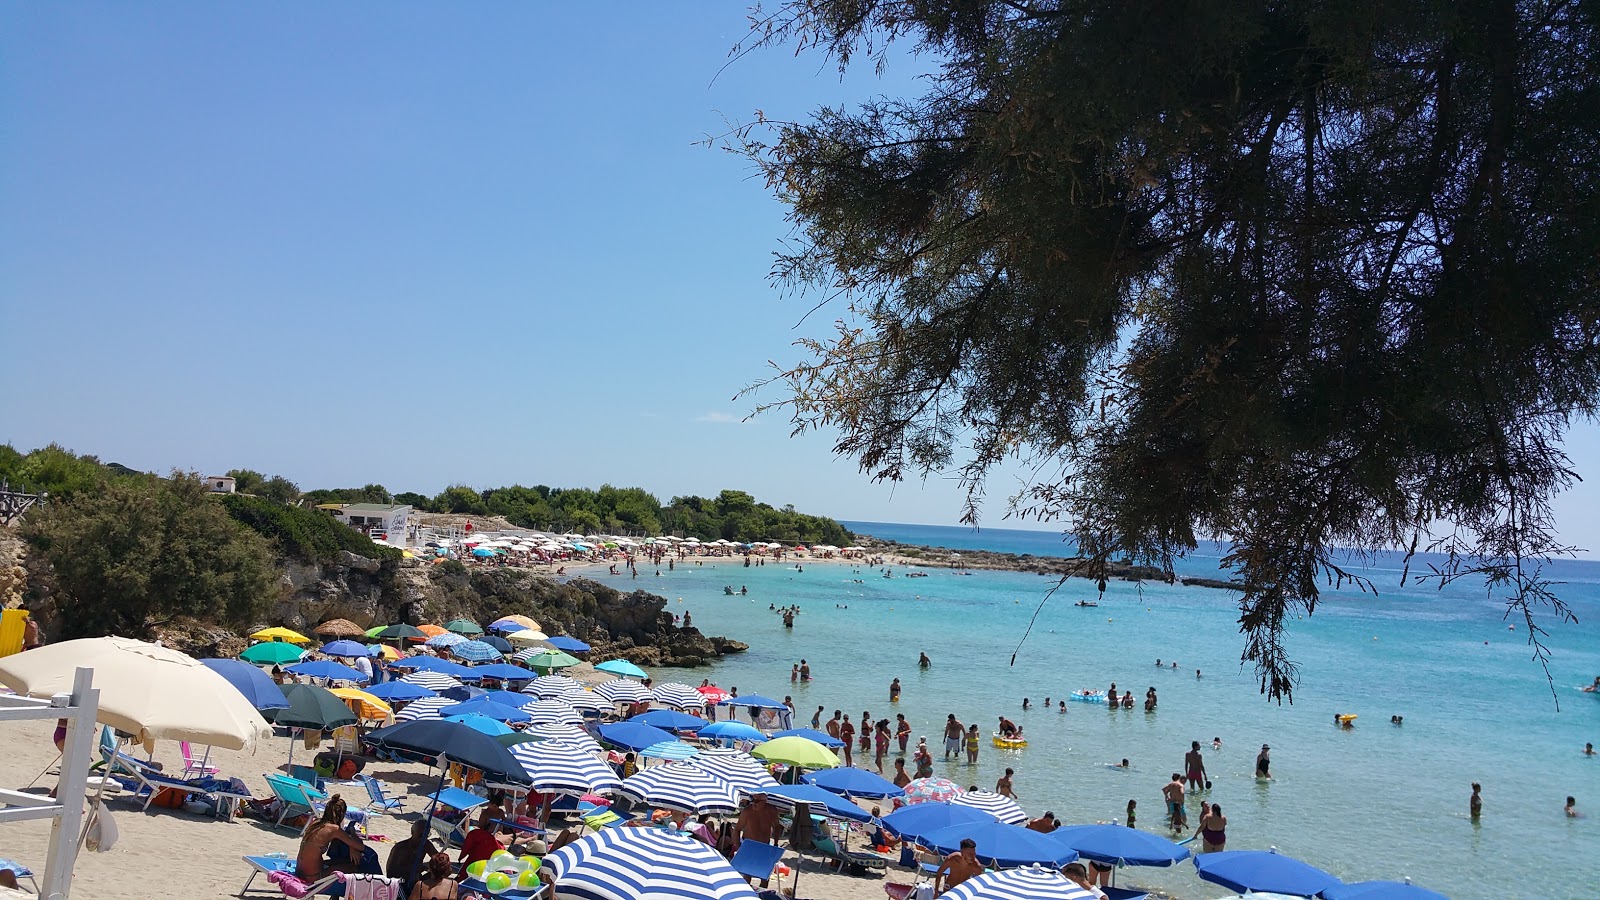 Photo of Spiaggia di Lido Silvana located in natural area